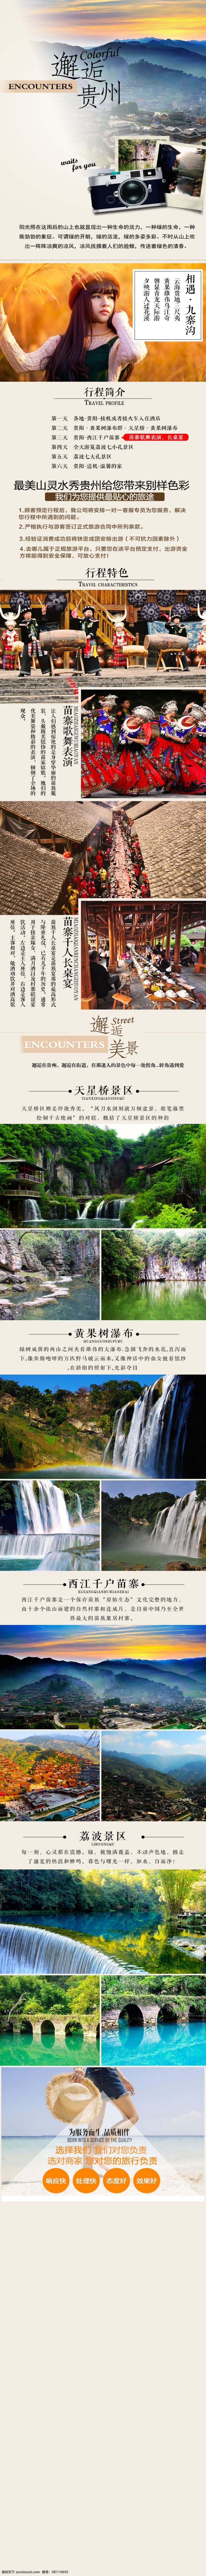 贵州旅游 详情 页 贵州 旅游 淘宝素材 淘宝设计 淘宝模板下载 白色